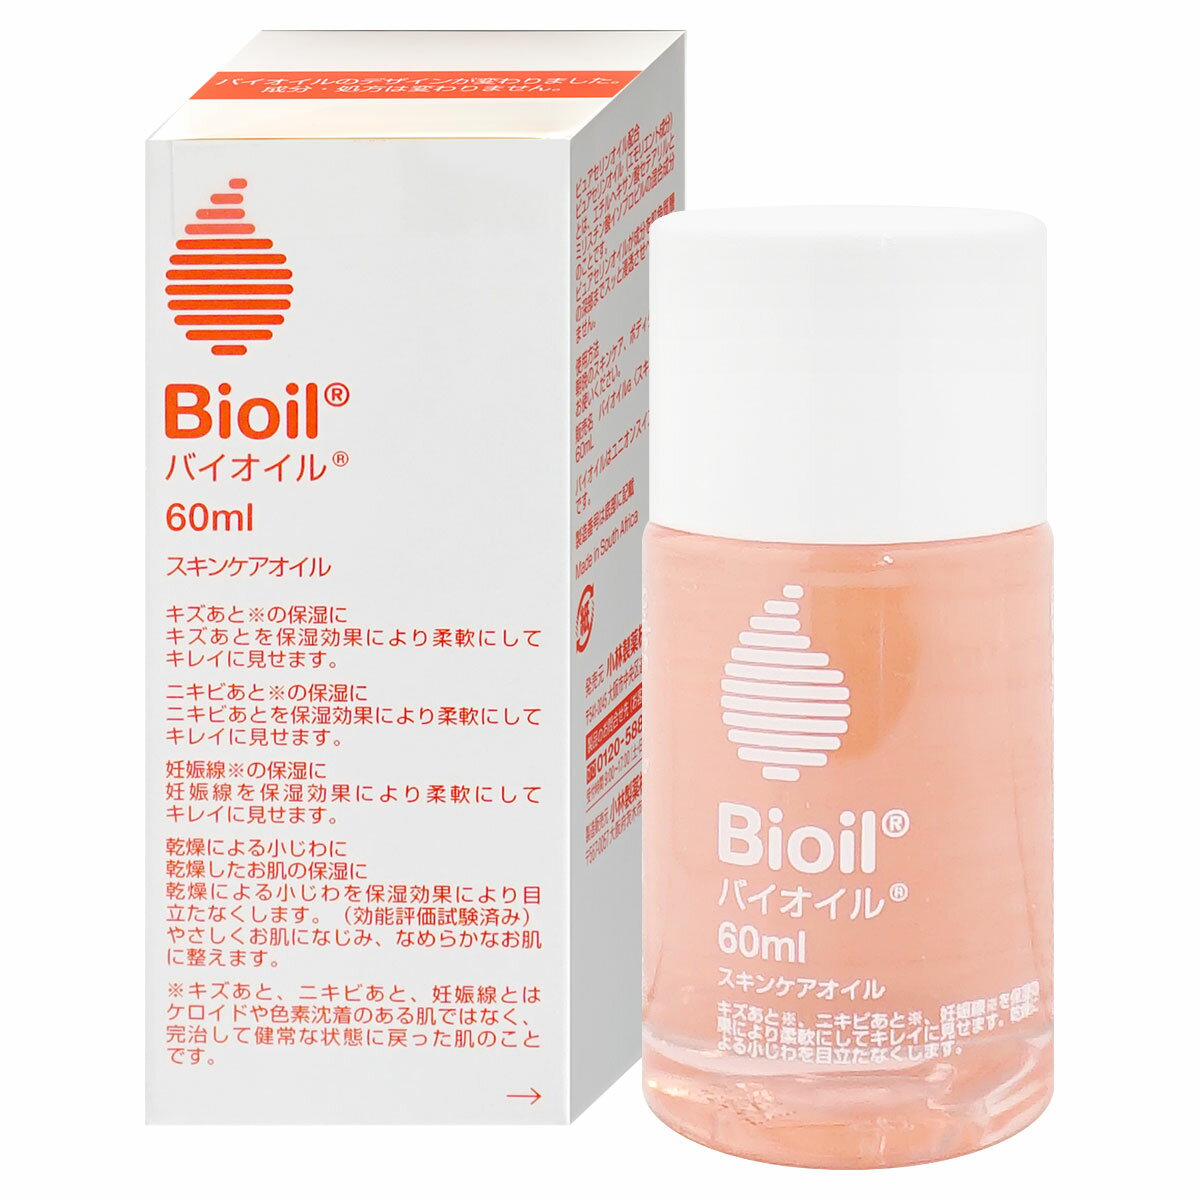 【正規品】小林製薬 バイオイル 60ml【保湿美容オイル/Bioil】【SBT】 (6039220)